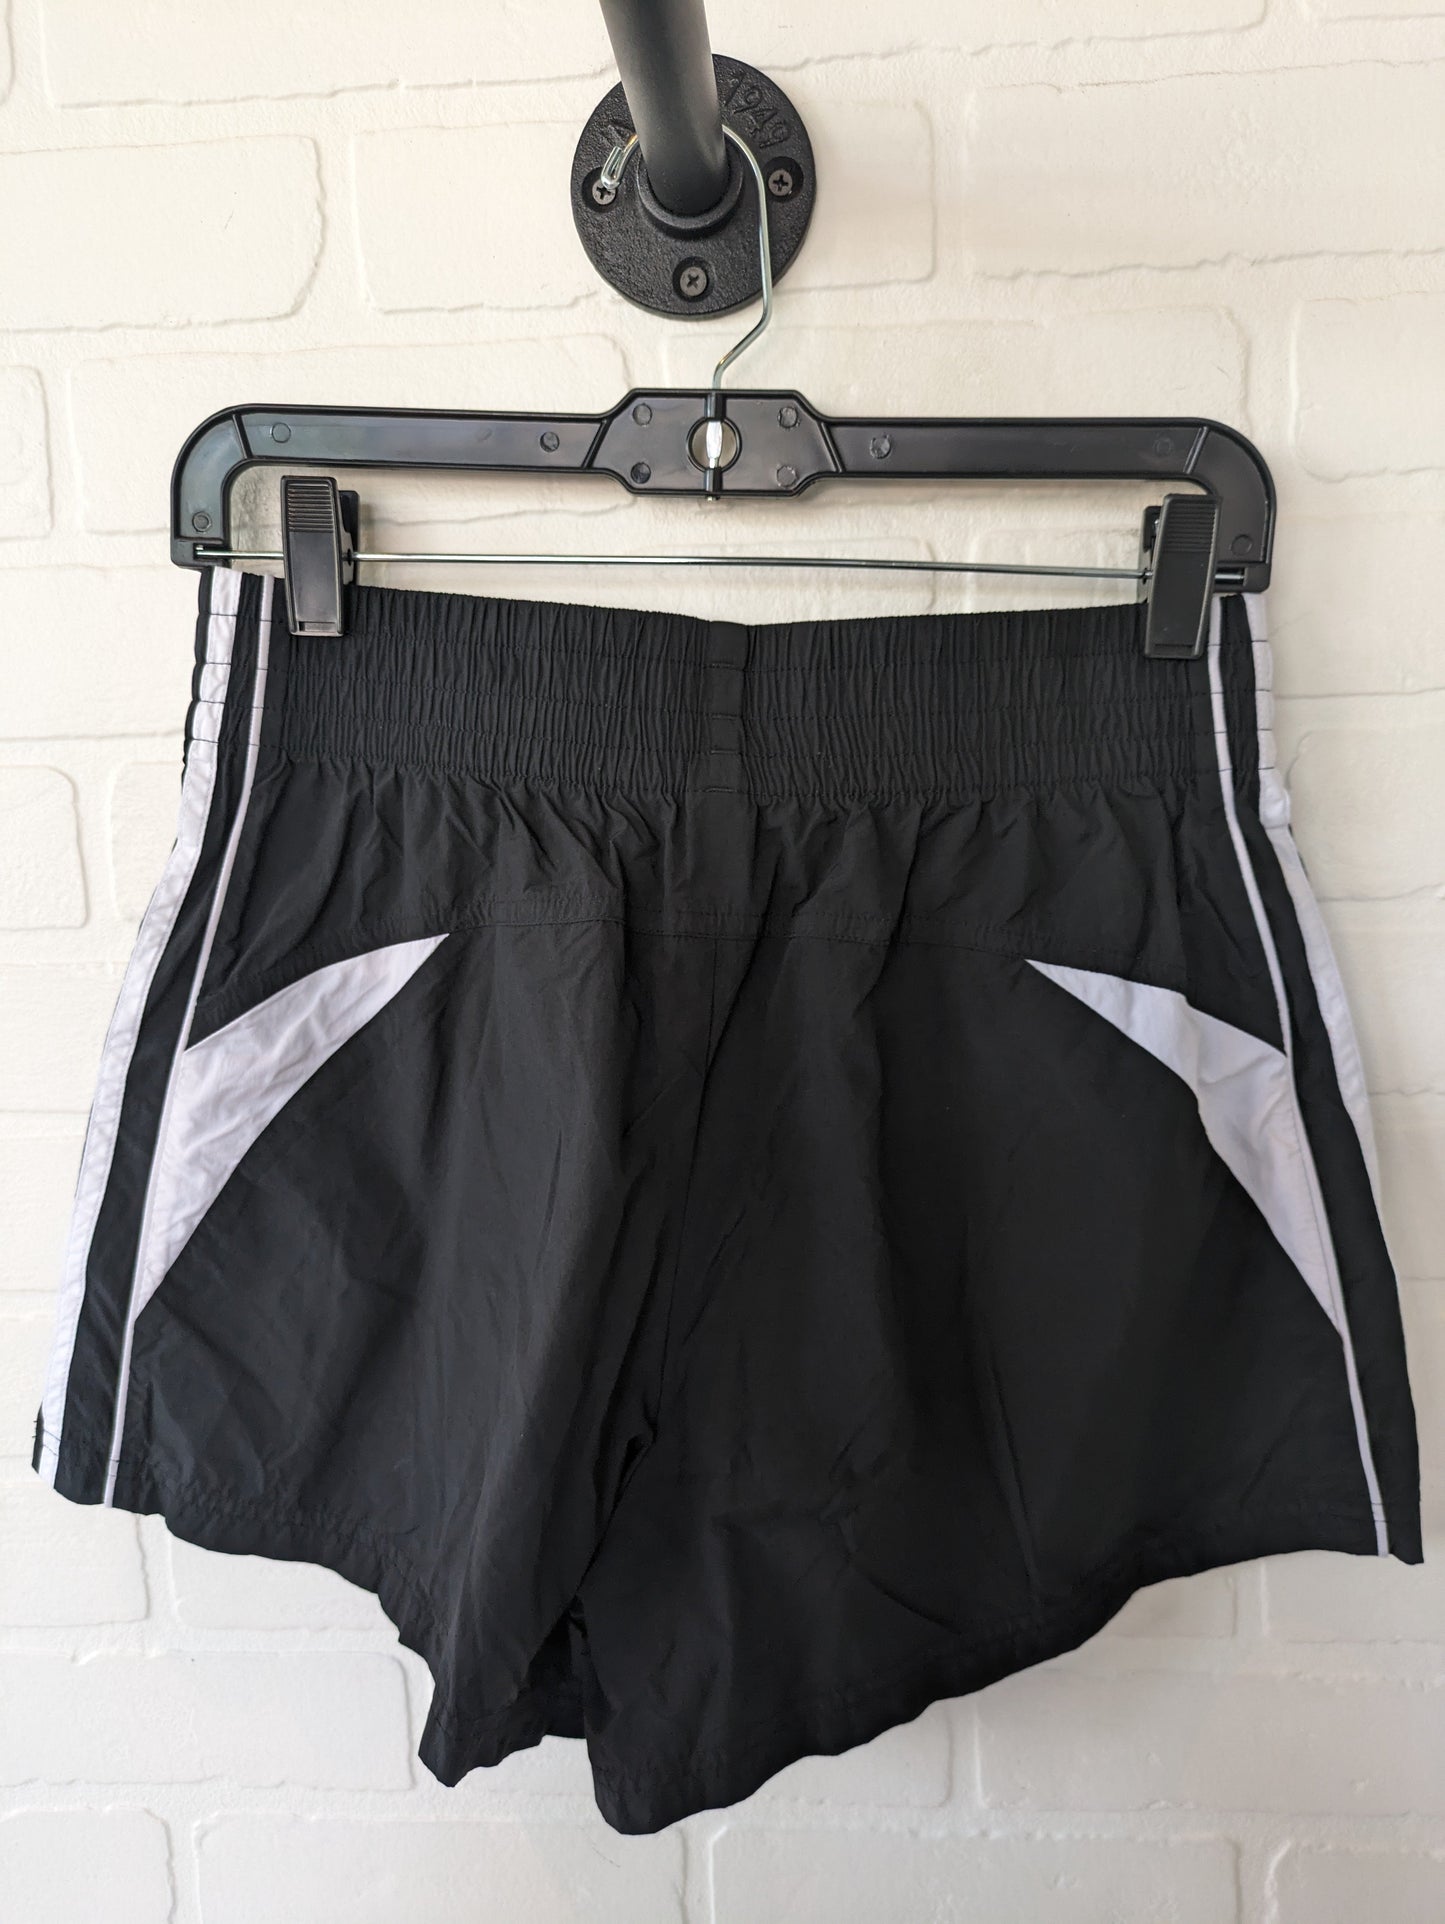 Black Athletic Shorts Adidas, Size 4